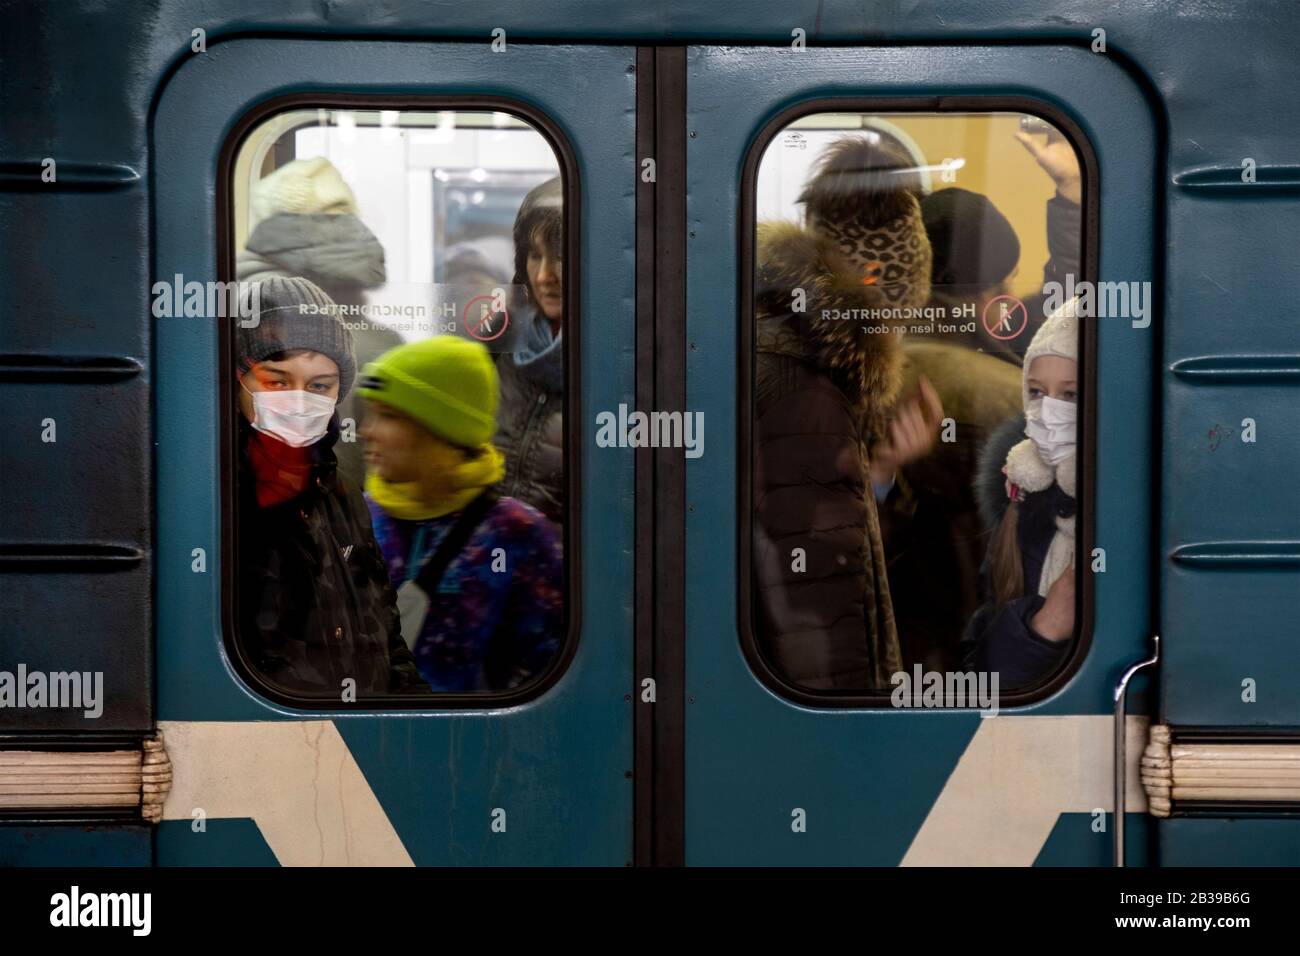 Moscú, Rusia. 29 de febrero de 2020 los niños usan máscaras médicas en el metro de Moscú durante la difusión de noticias sobre la pandemia del coronavirus en el mundo, Rusia Foto de stock